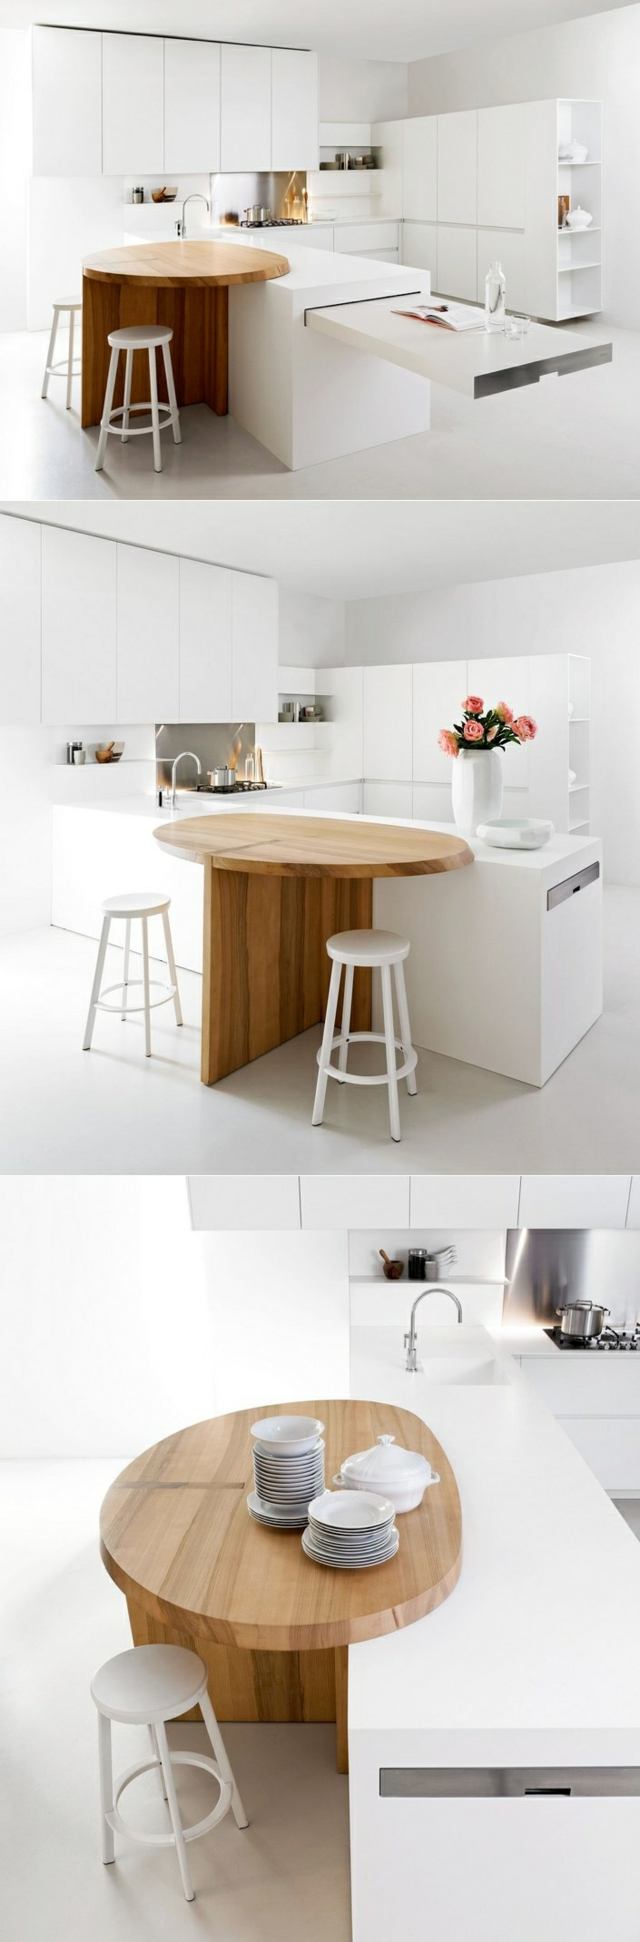 Kök runt ön bänk vit utrustat kök modernt minimalistiskt